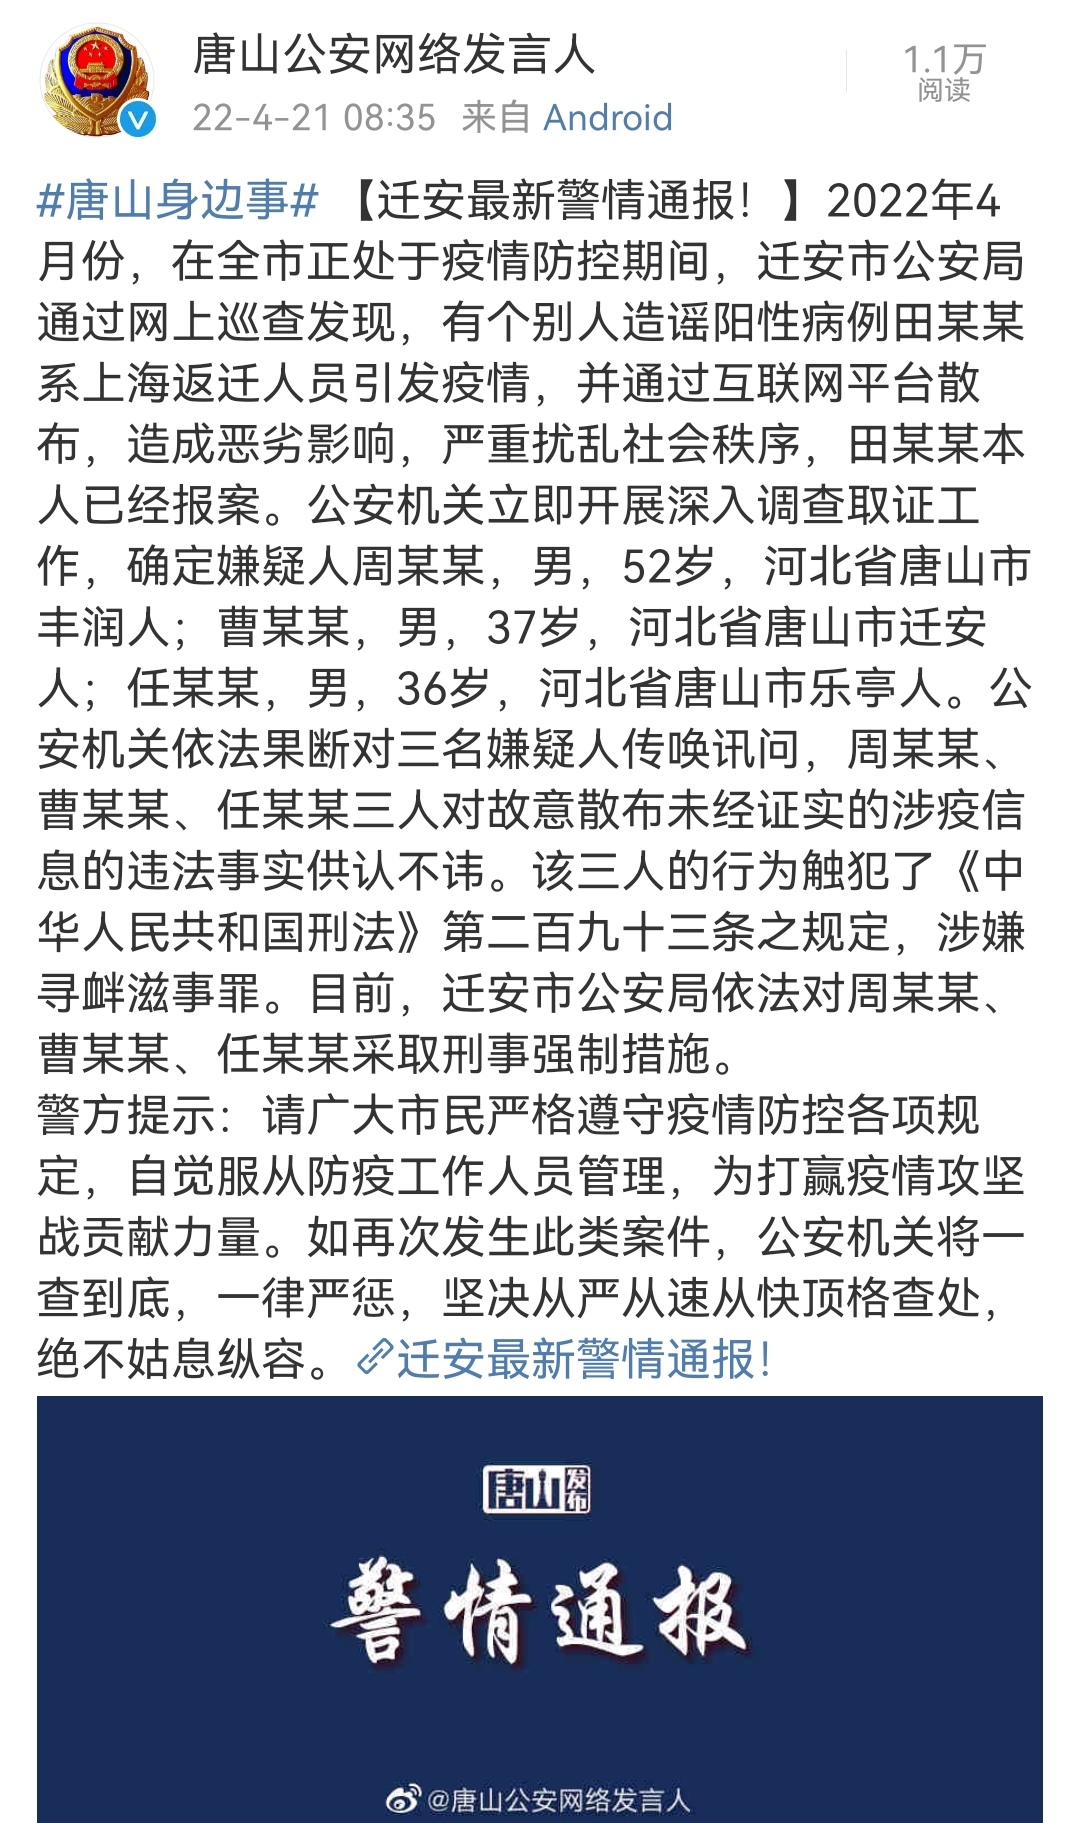 “田某某系上海返迁人员引发疫情”？谣言！三人已被采取刑事强制措施